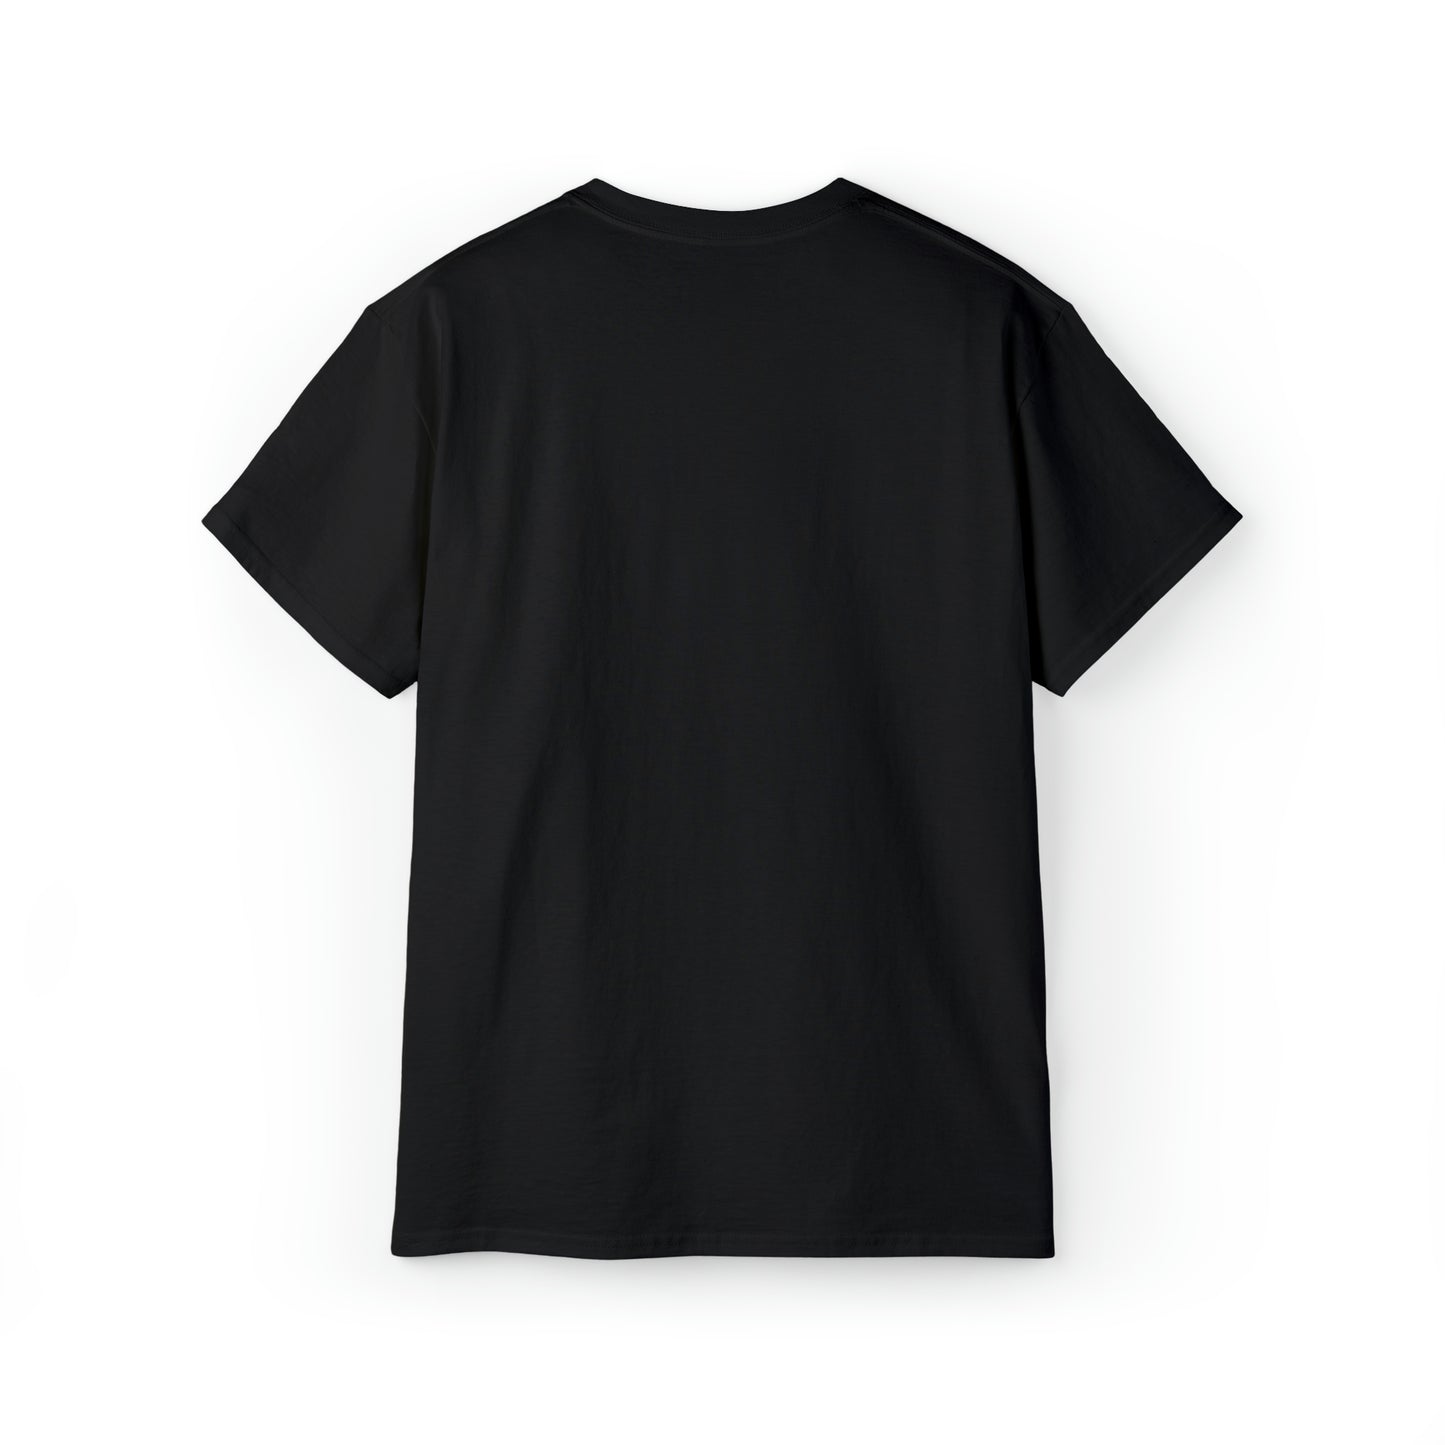 T-Shirt - Black, Debonair Schoolwear Wythenshawe